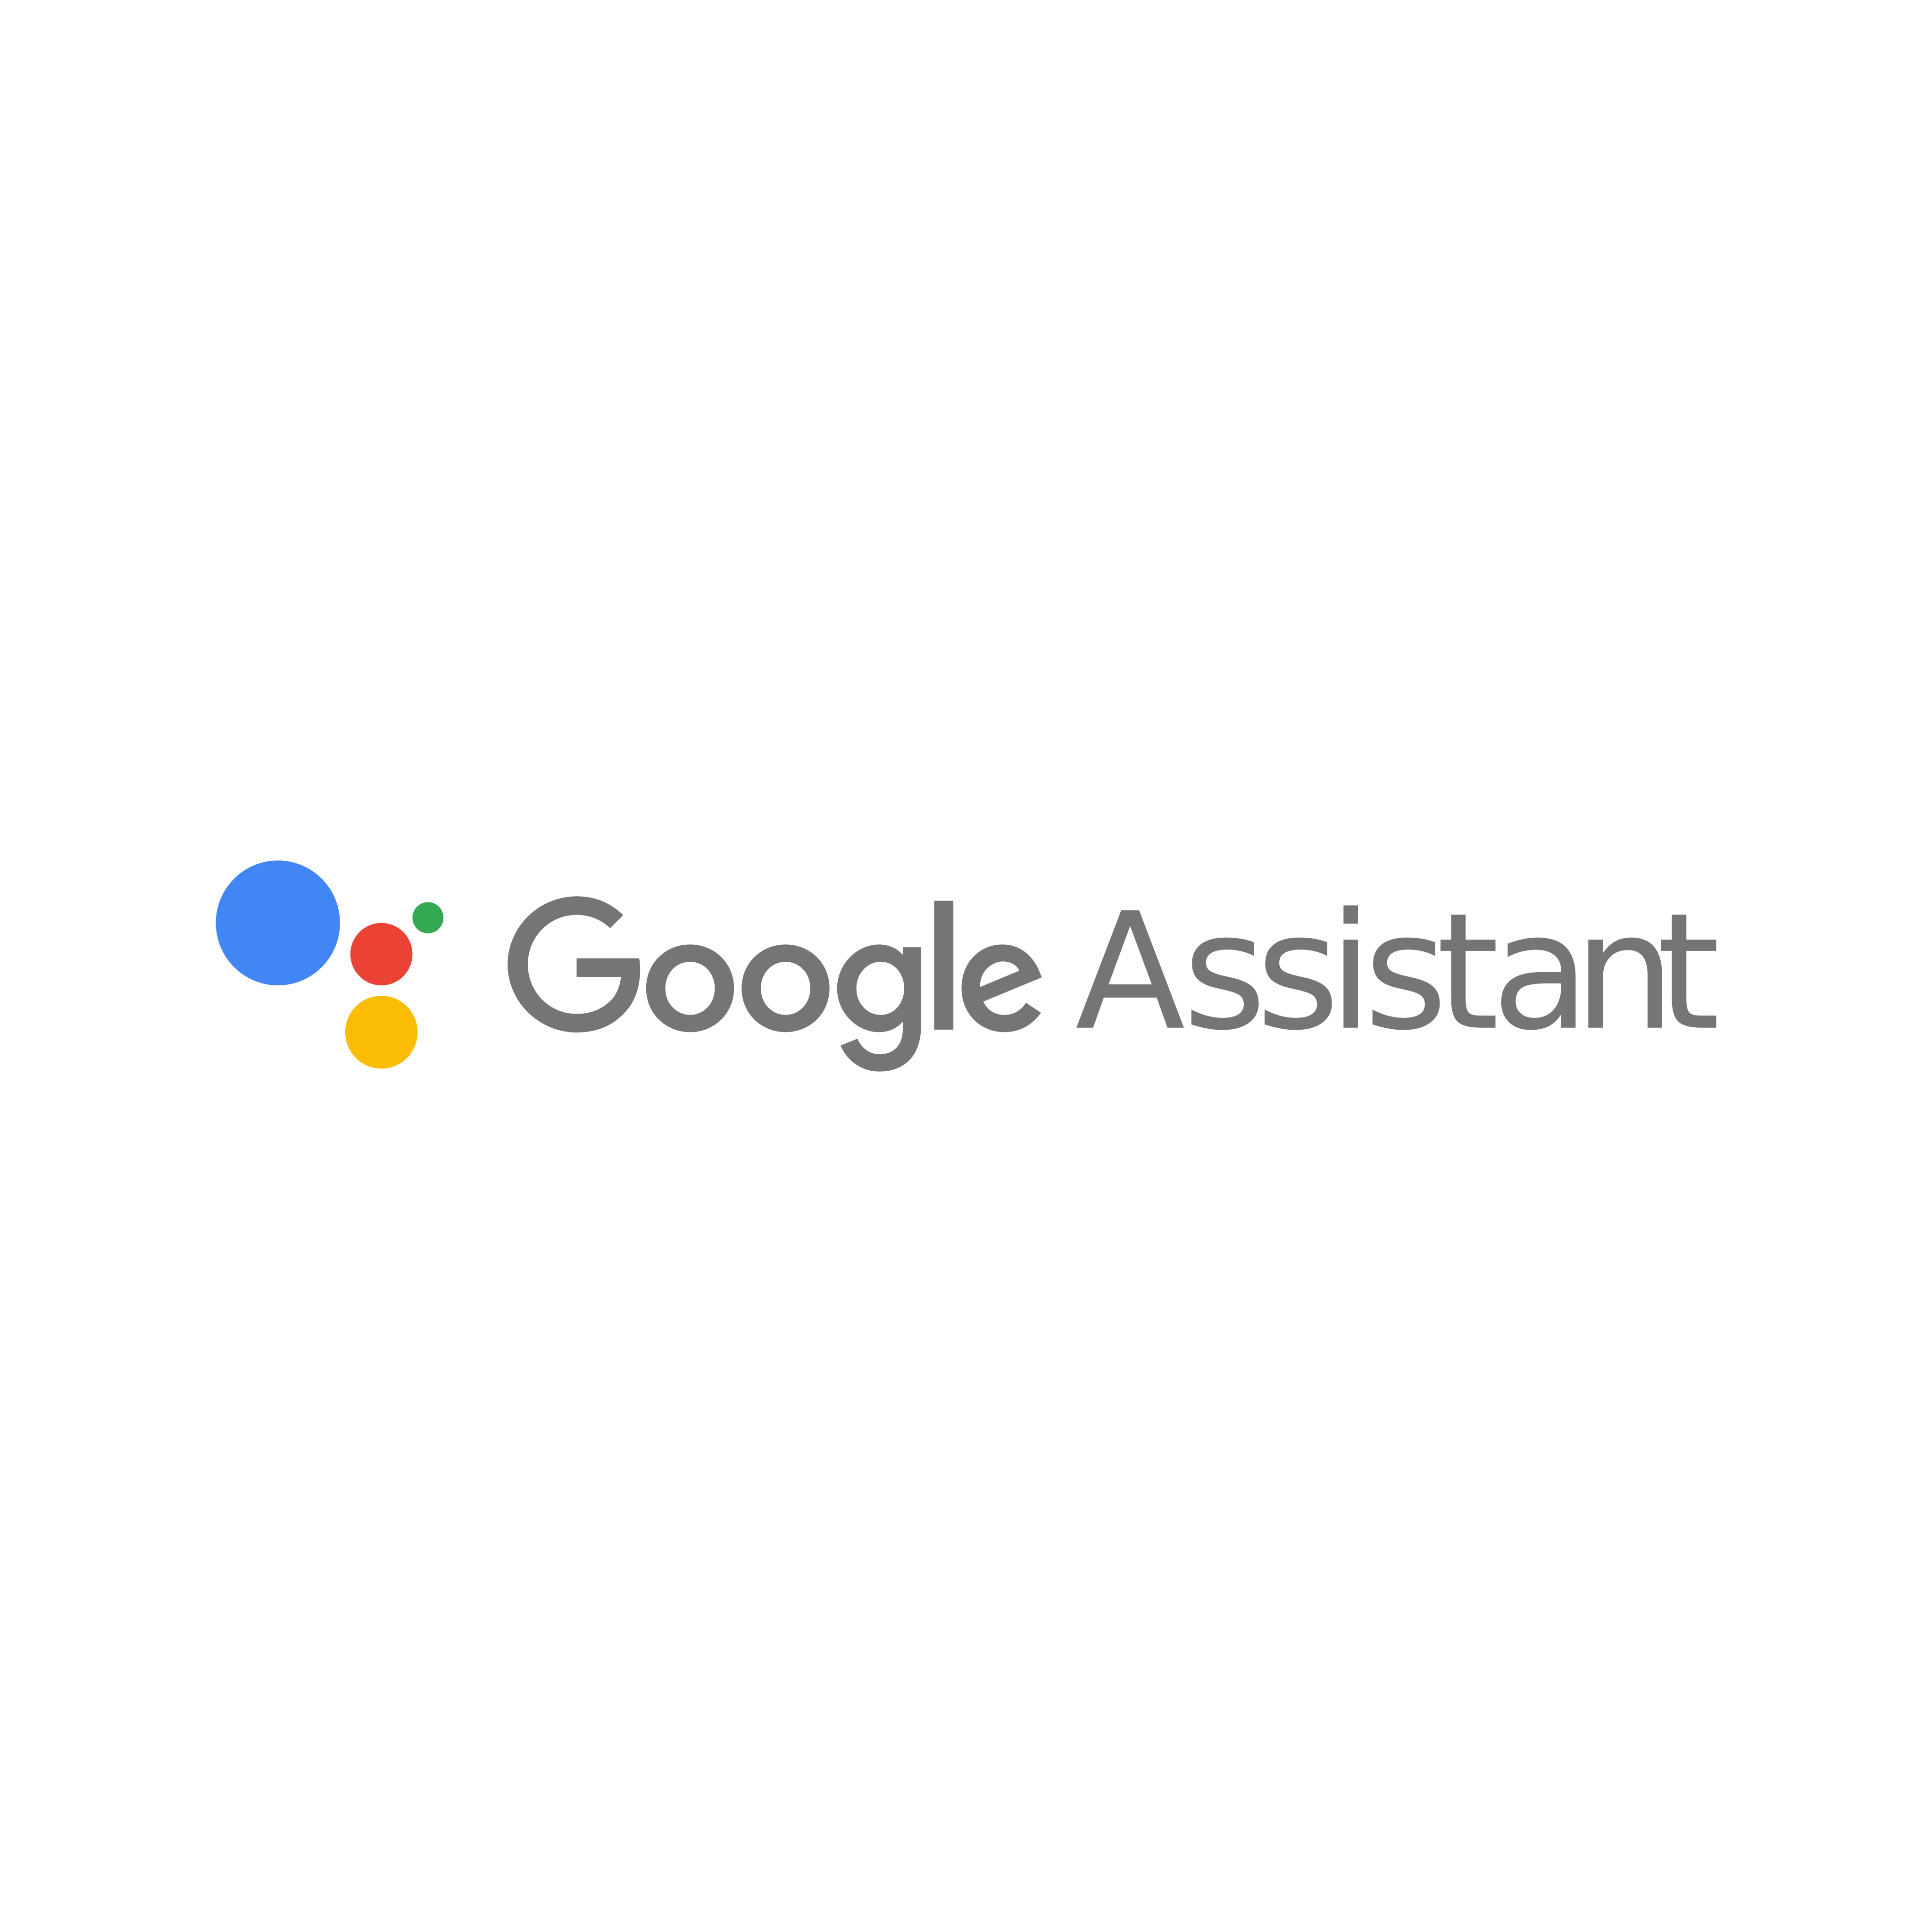 google assistant logo 0 - Google Assistant Logo